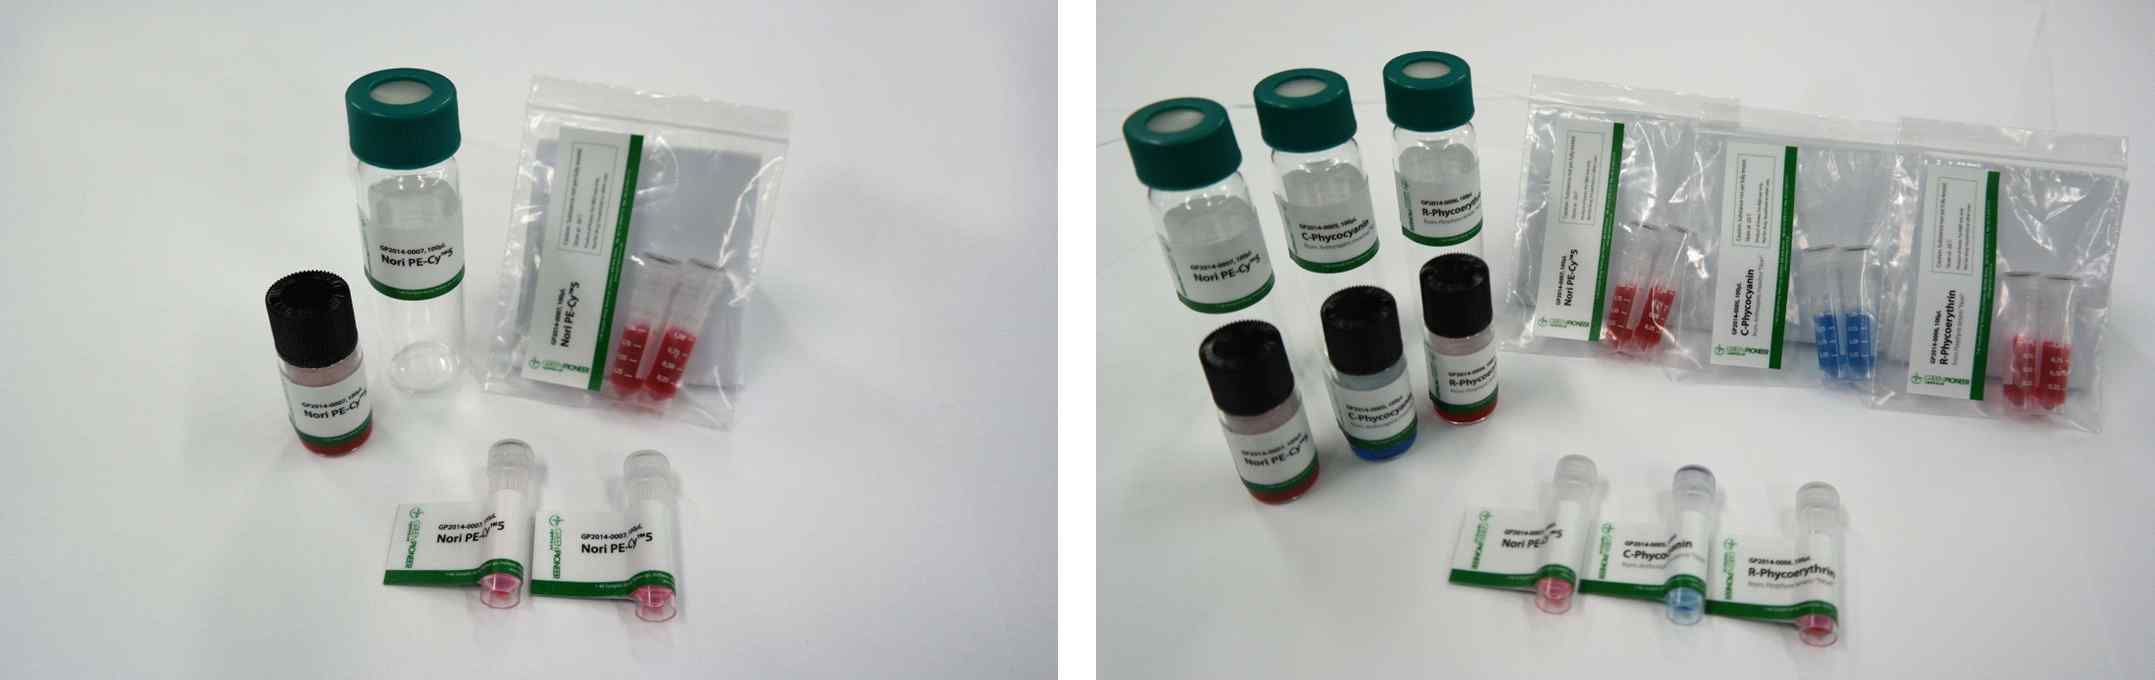 그림 24. 본 사업을 통해 상품화한 복합형광염료 Nori PE-Cy™5(좌)와 형광염료 3종세트(우)